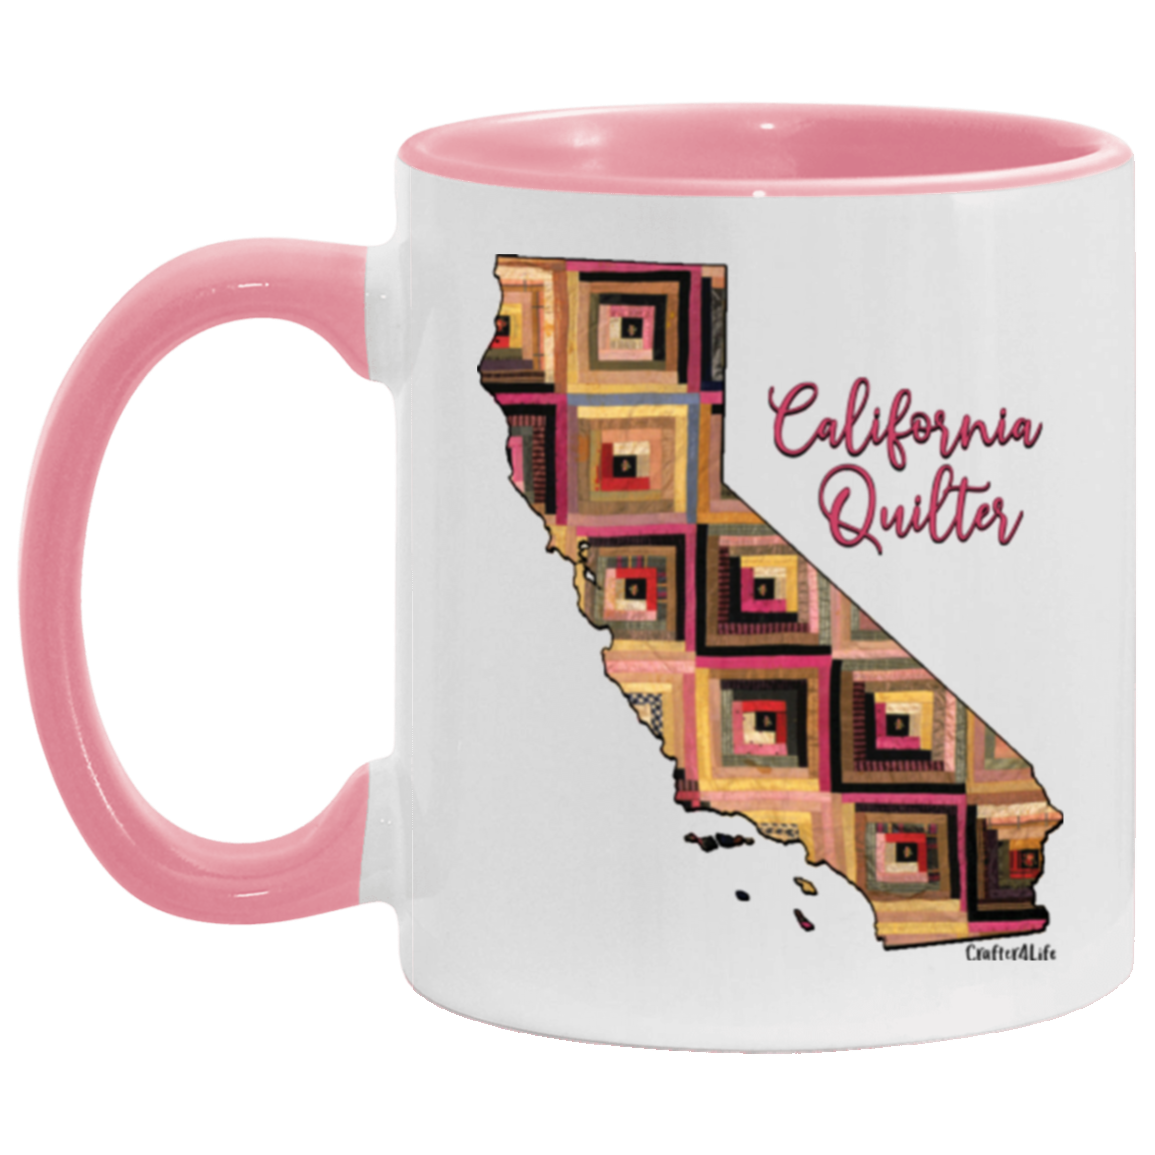 California Quilter Mugs